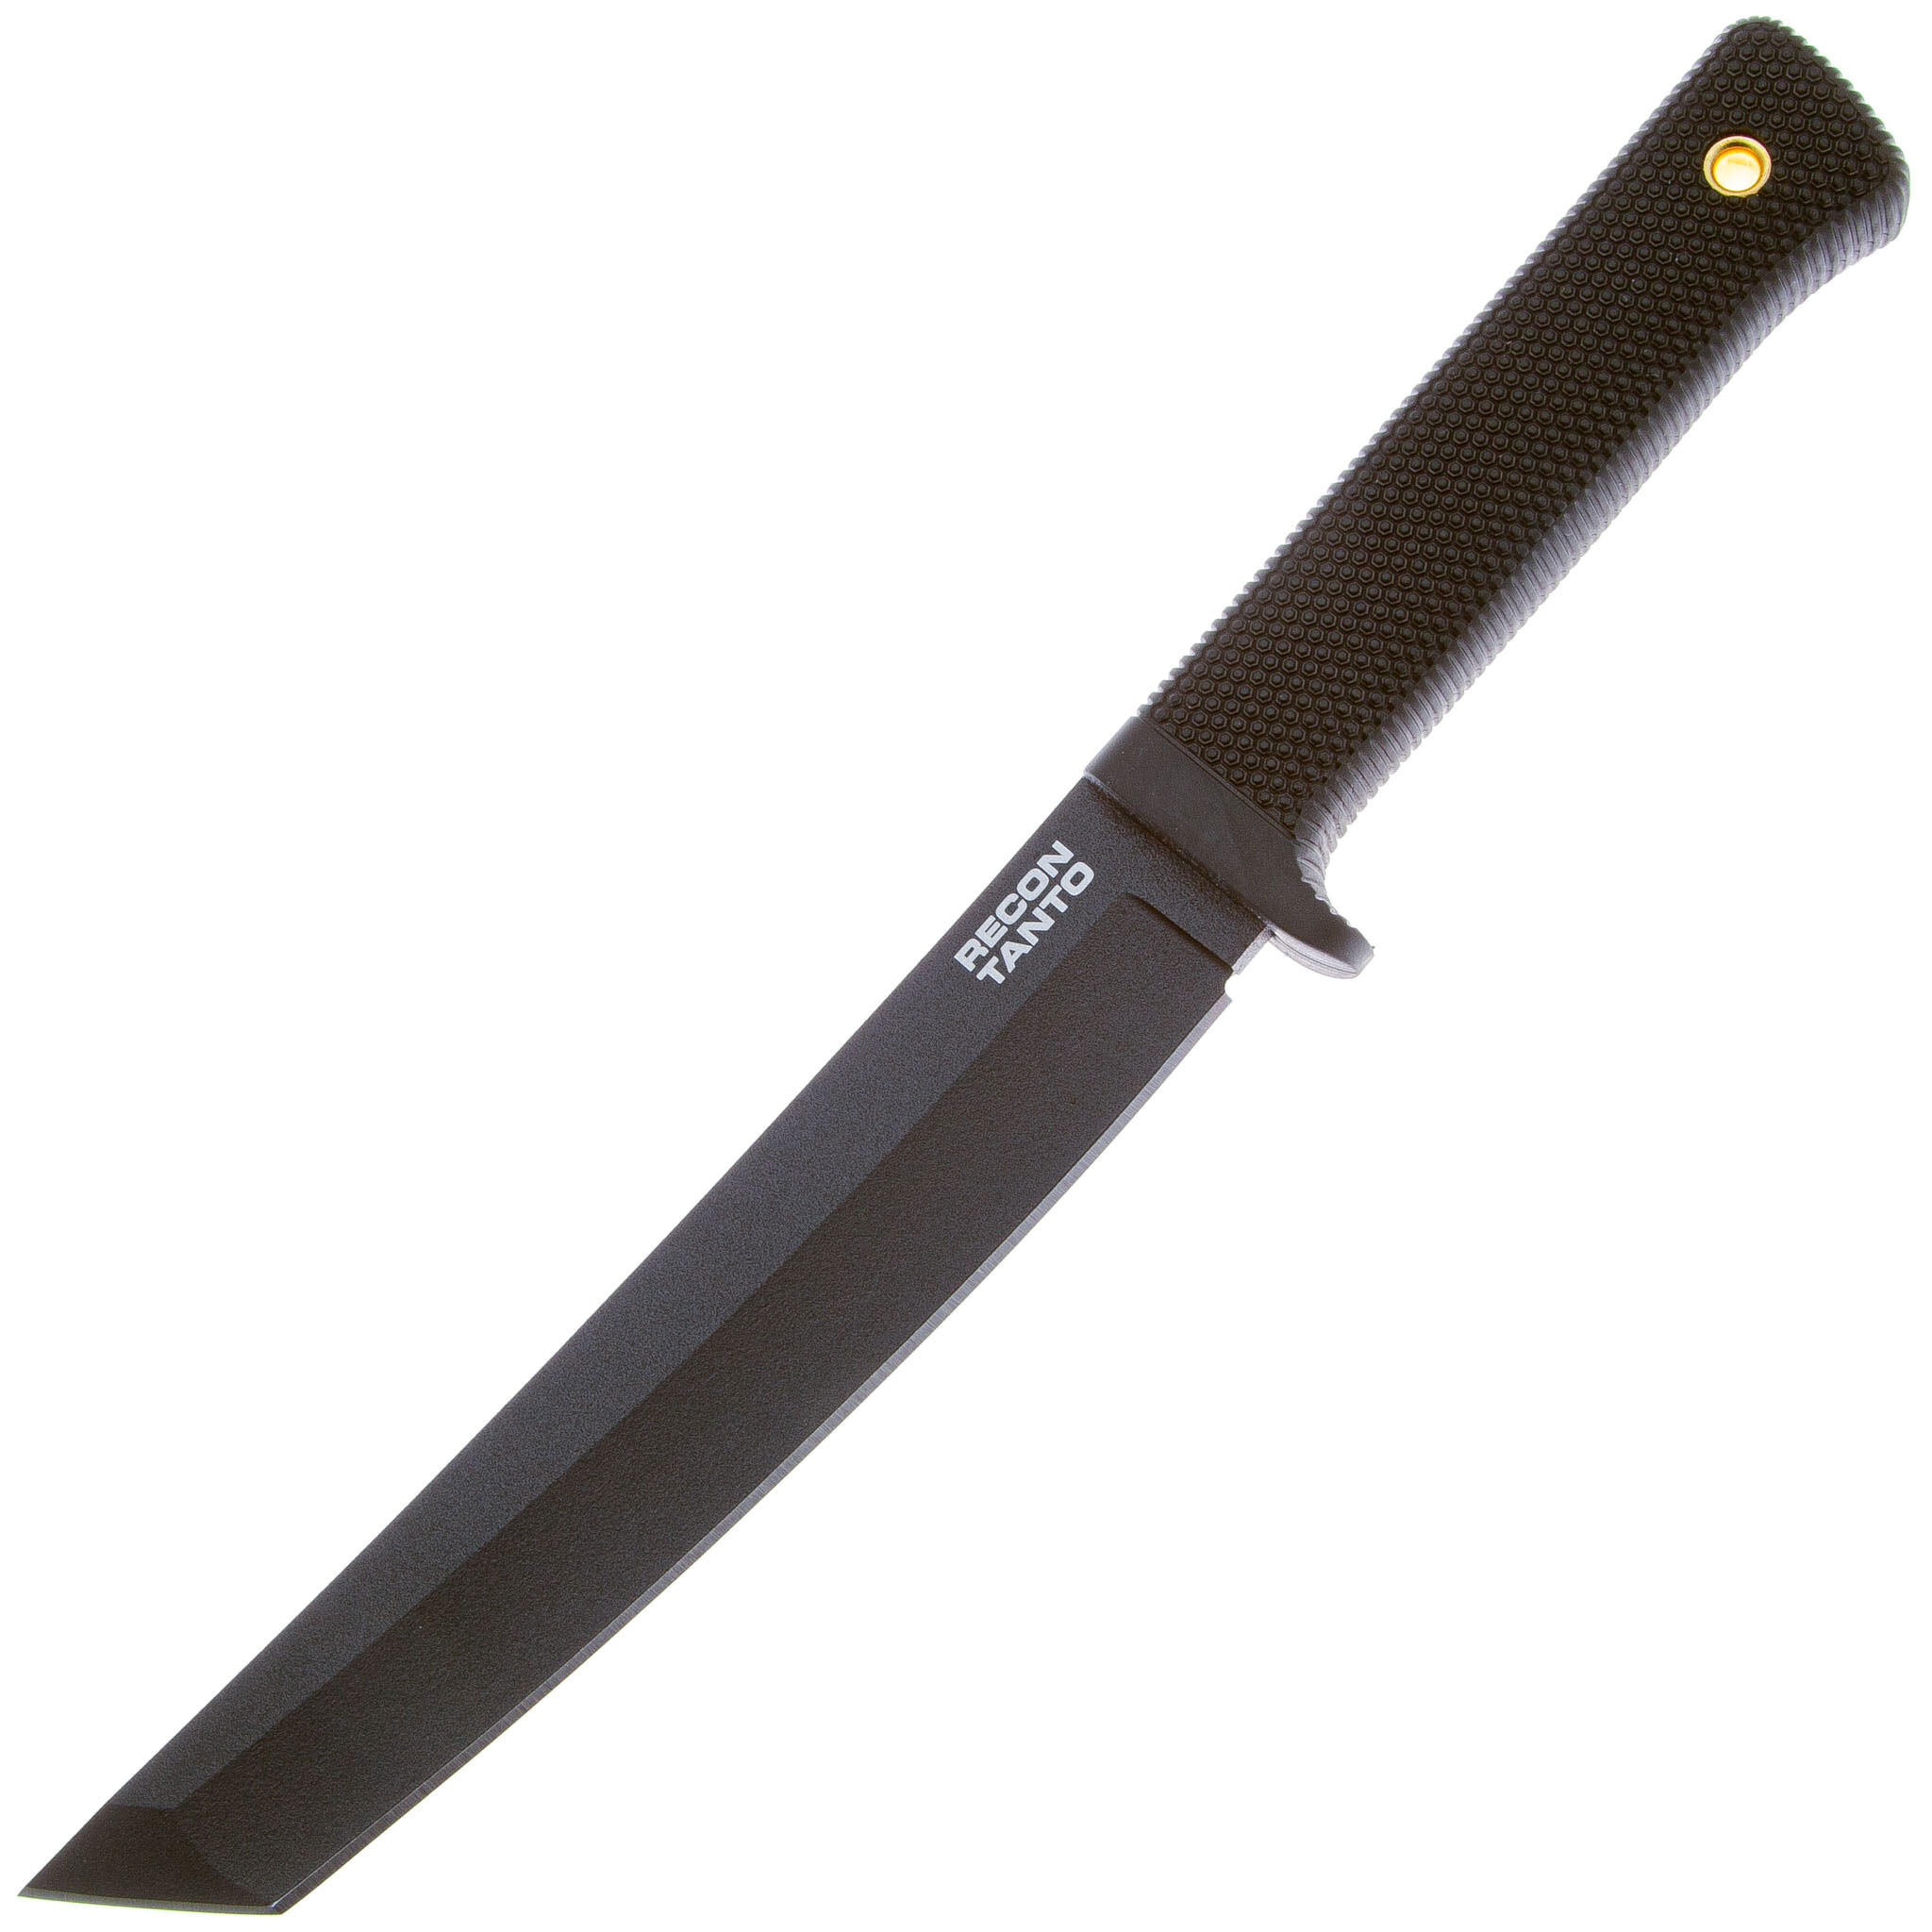 Нож с фиксированным клинком Cold Steel Recon Tanto, сталь SK-5, рукоять резина, black нож складной 27bc recon 1 clip point plain edge сталь s35vn рукоять g10 cold steel